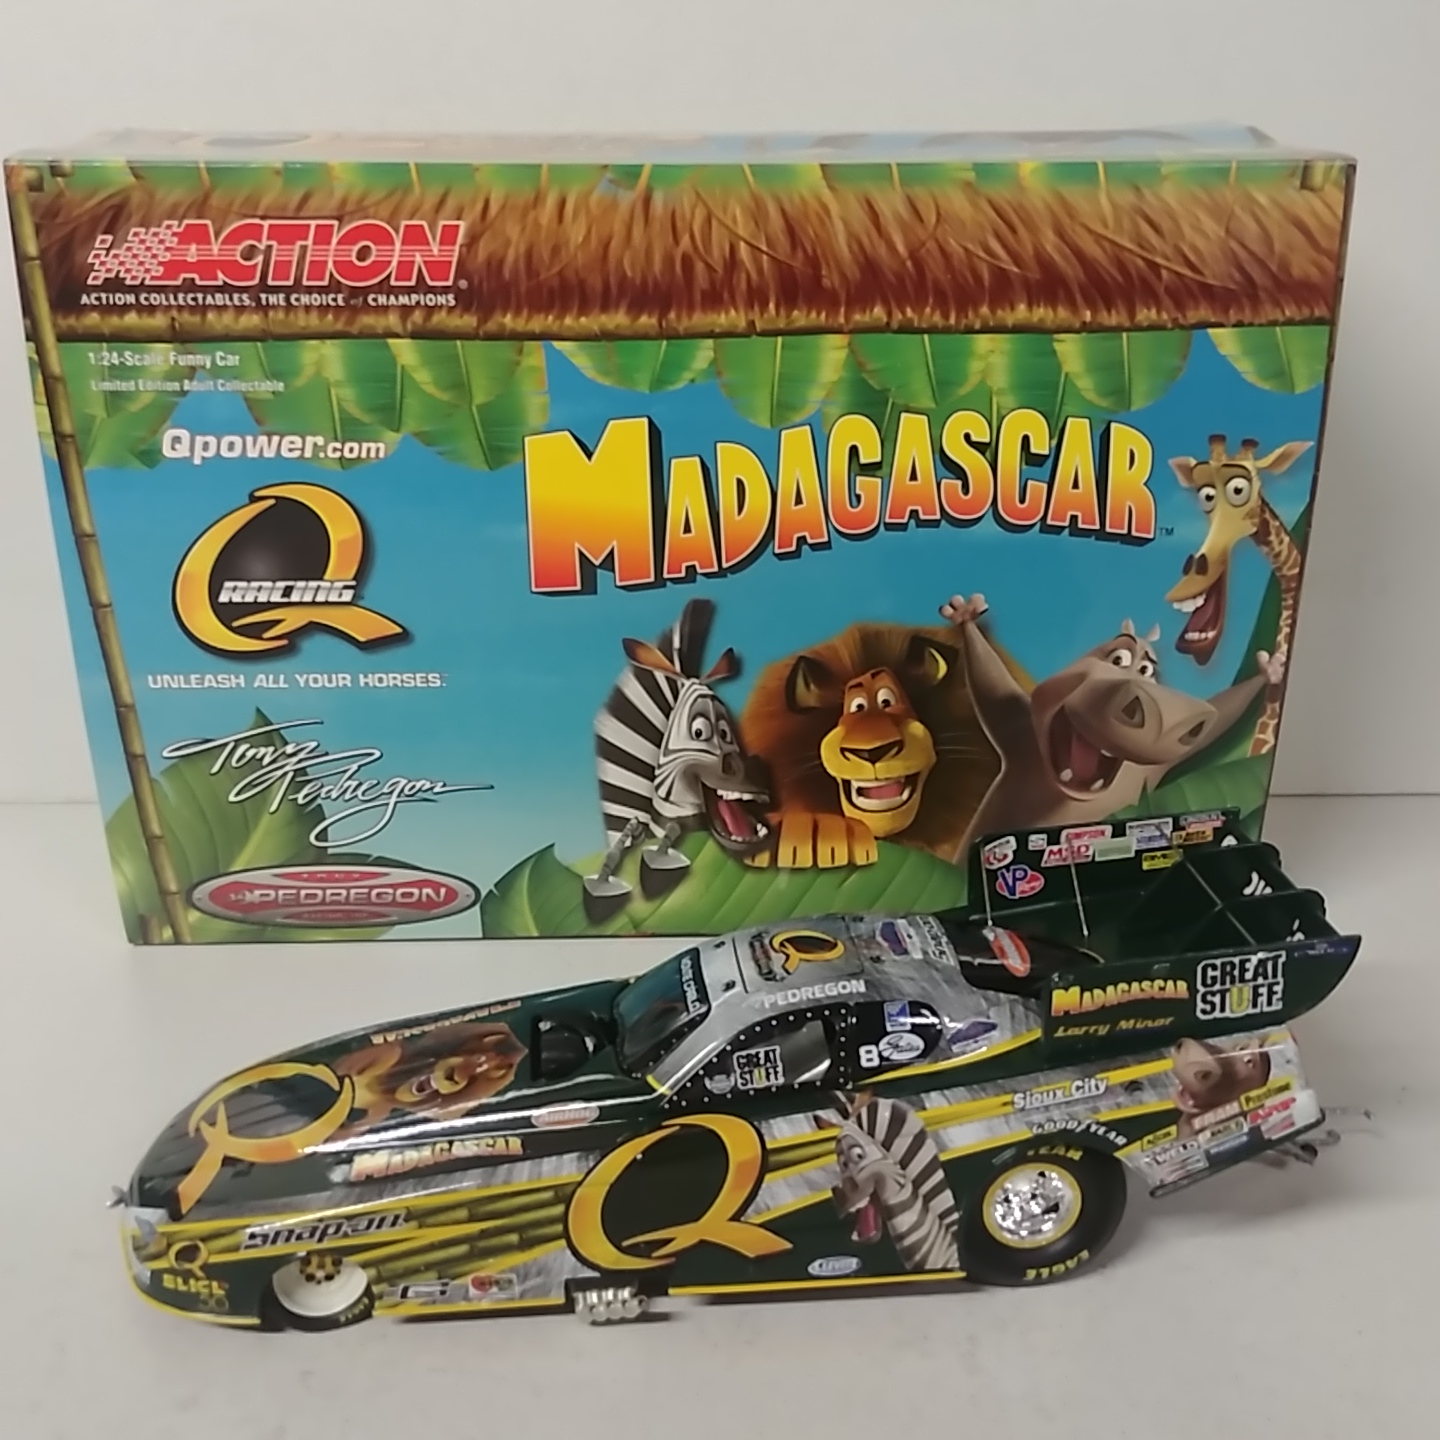 2005 Tony Pedregon 1/24th Quaker State "Madagascar" funny car